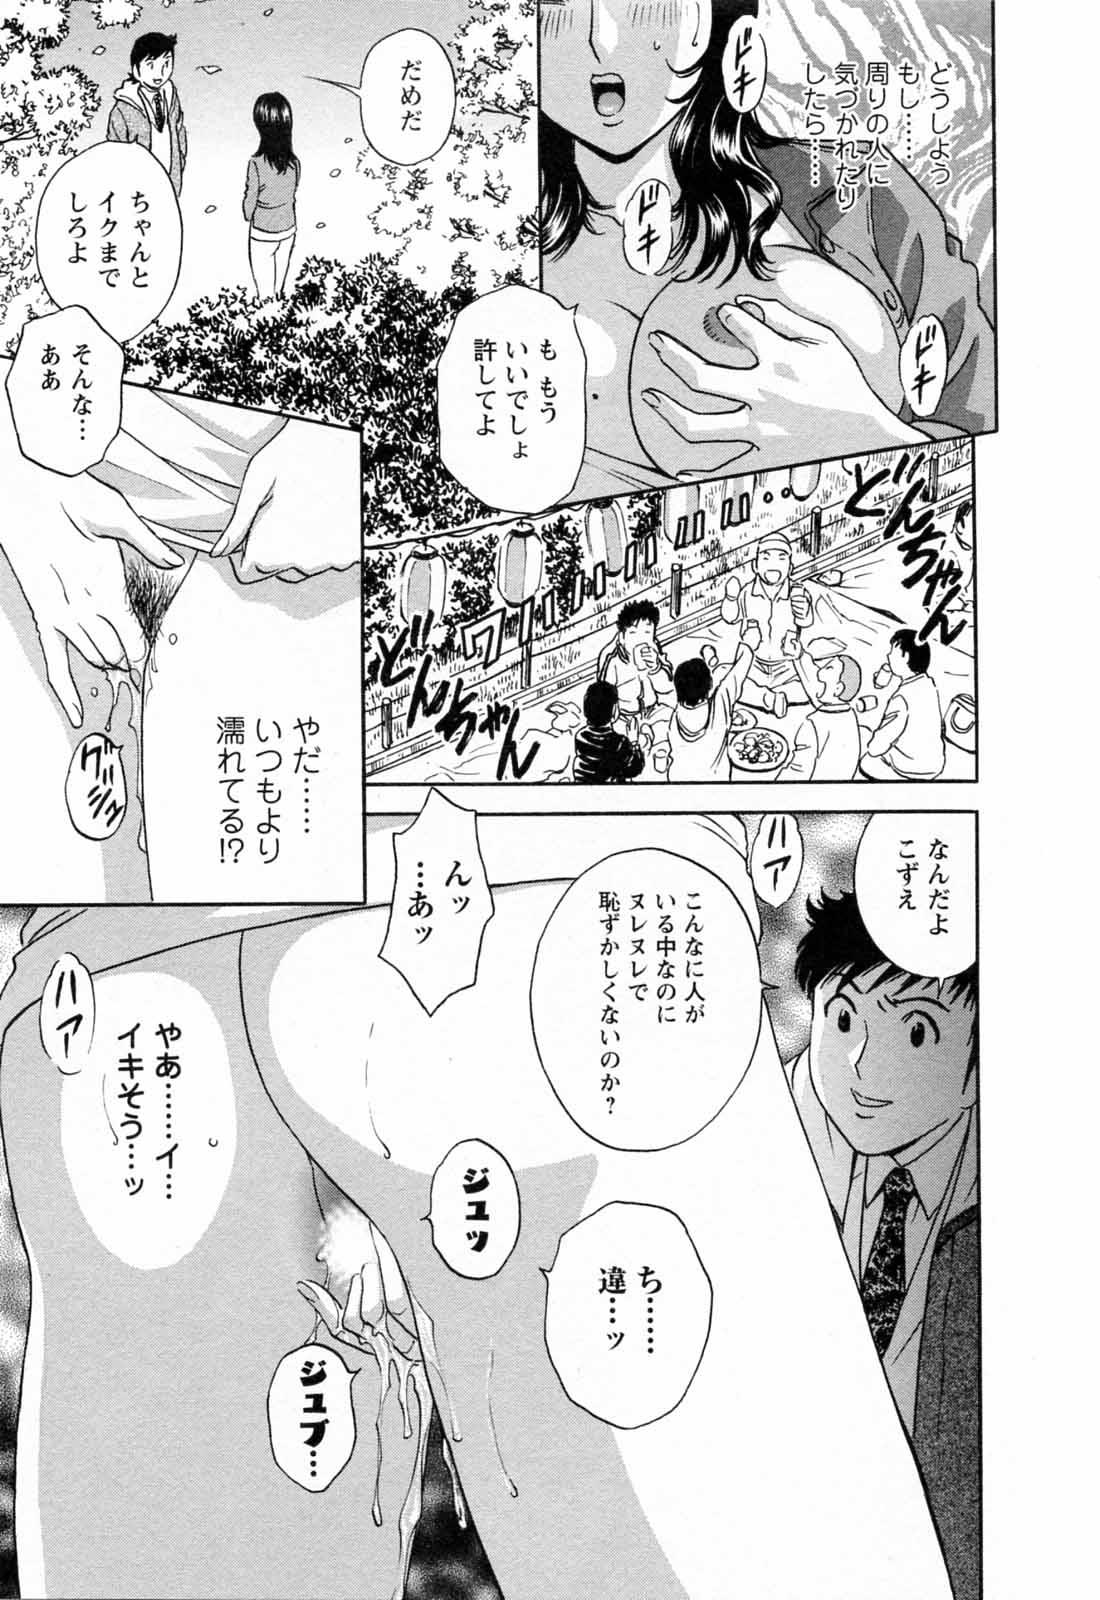 [Hidemaru] Mo-Retsu! Boin Sensei (Boing Boing Teacher) Vol.5 64